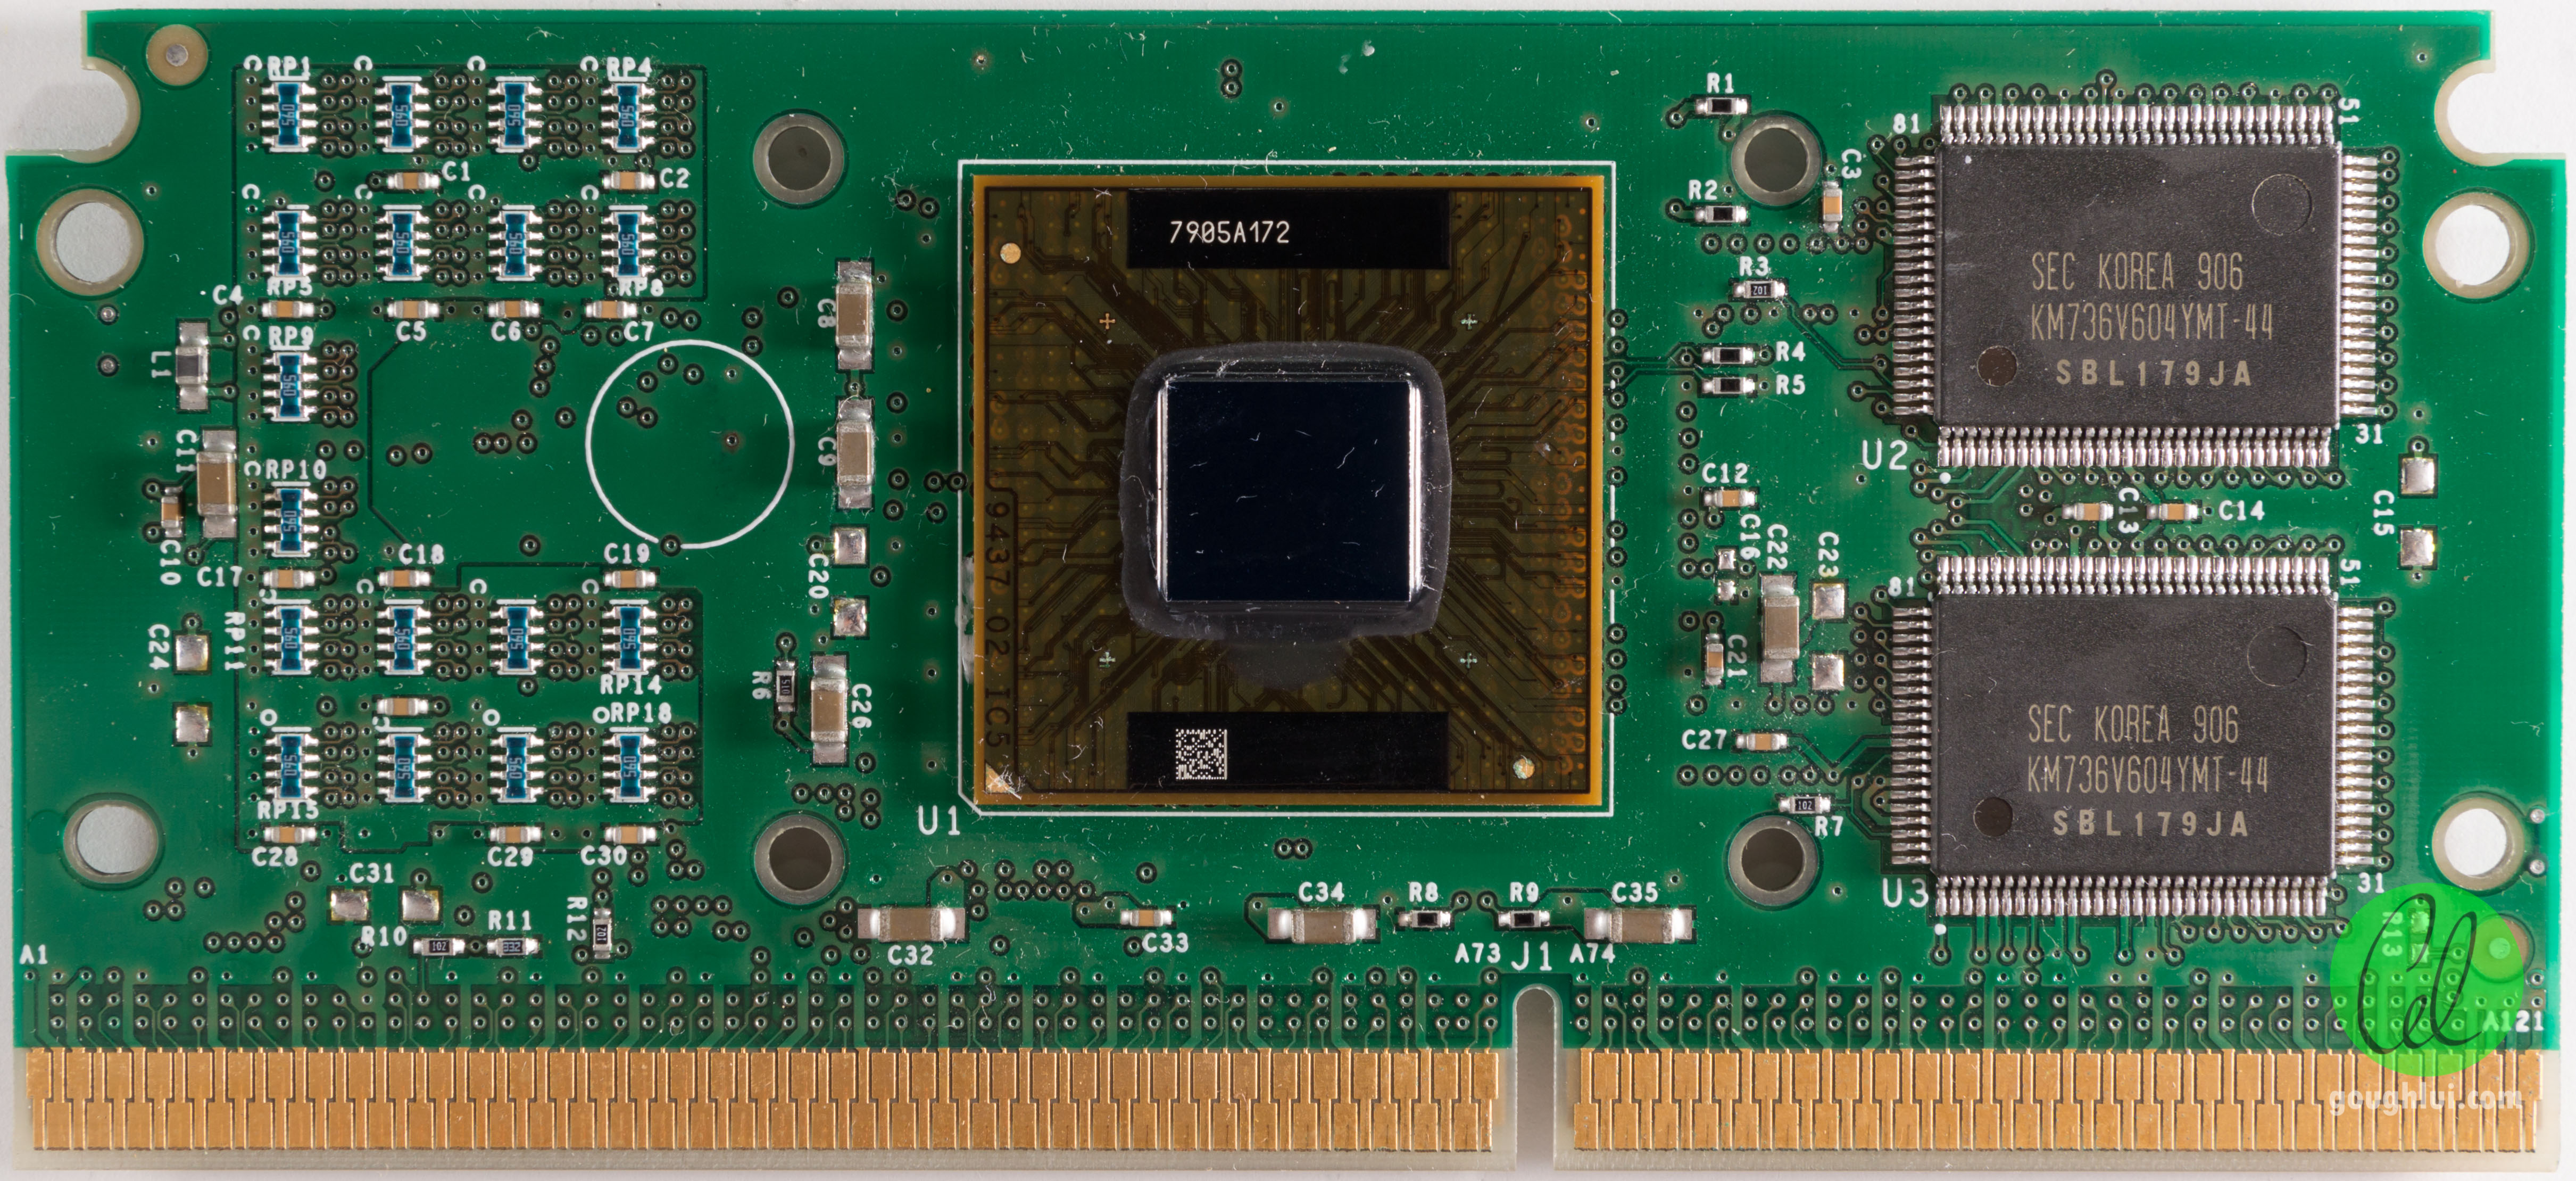 Intel 3 pro. Pentium 2 Slot 1. Pentium III 500. Процессор Intel Pentium 3. Pentium 2 400 MHZ.